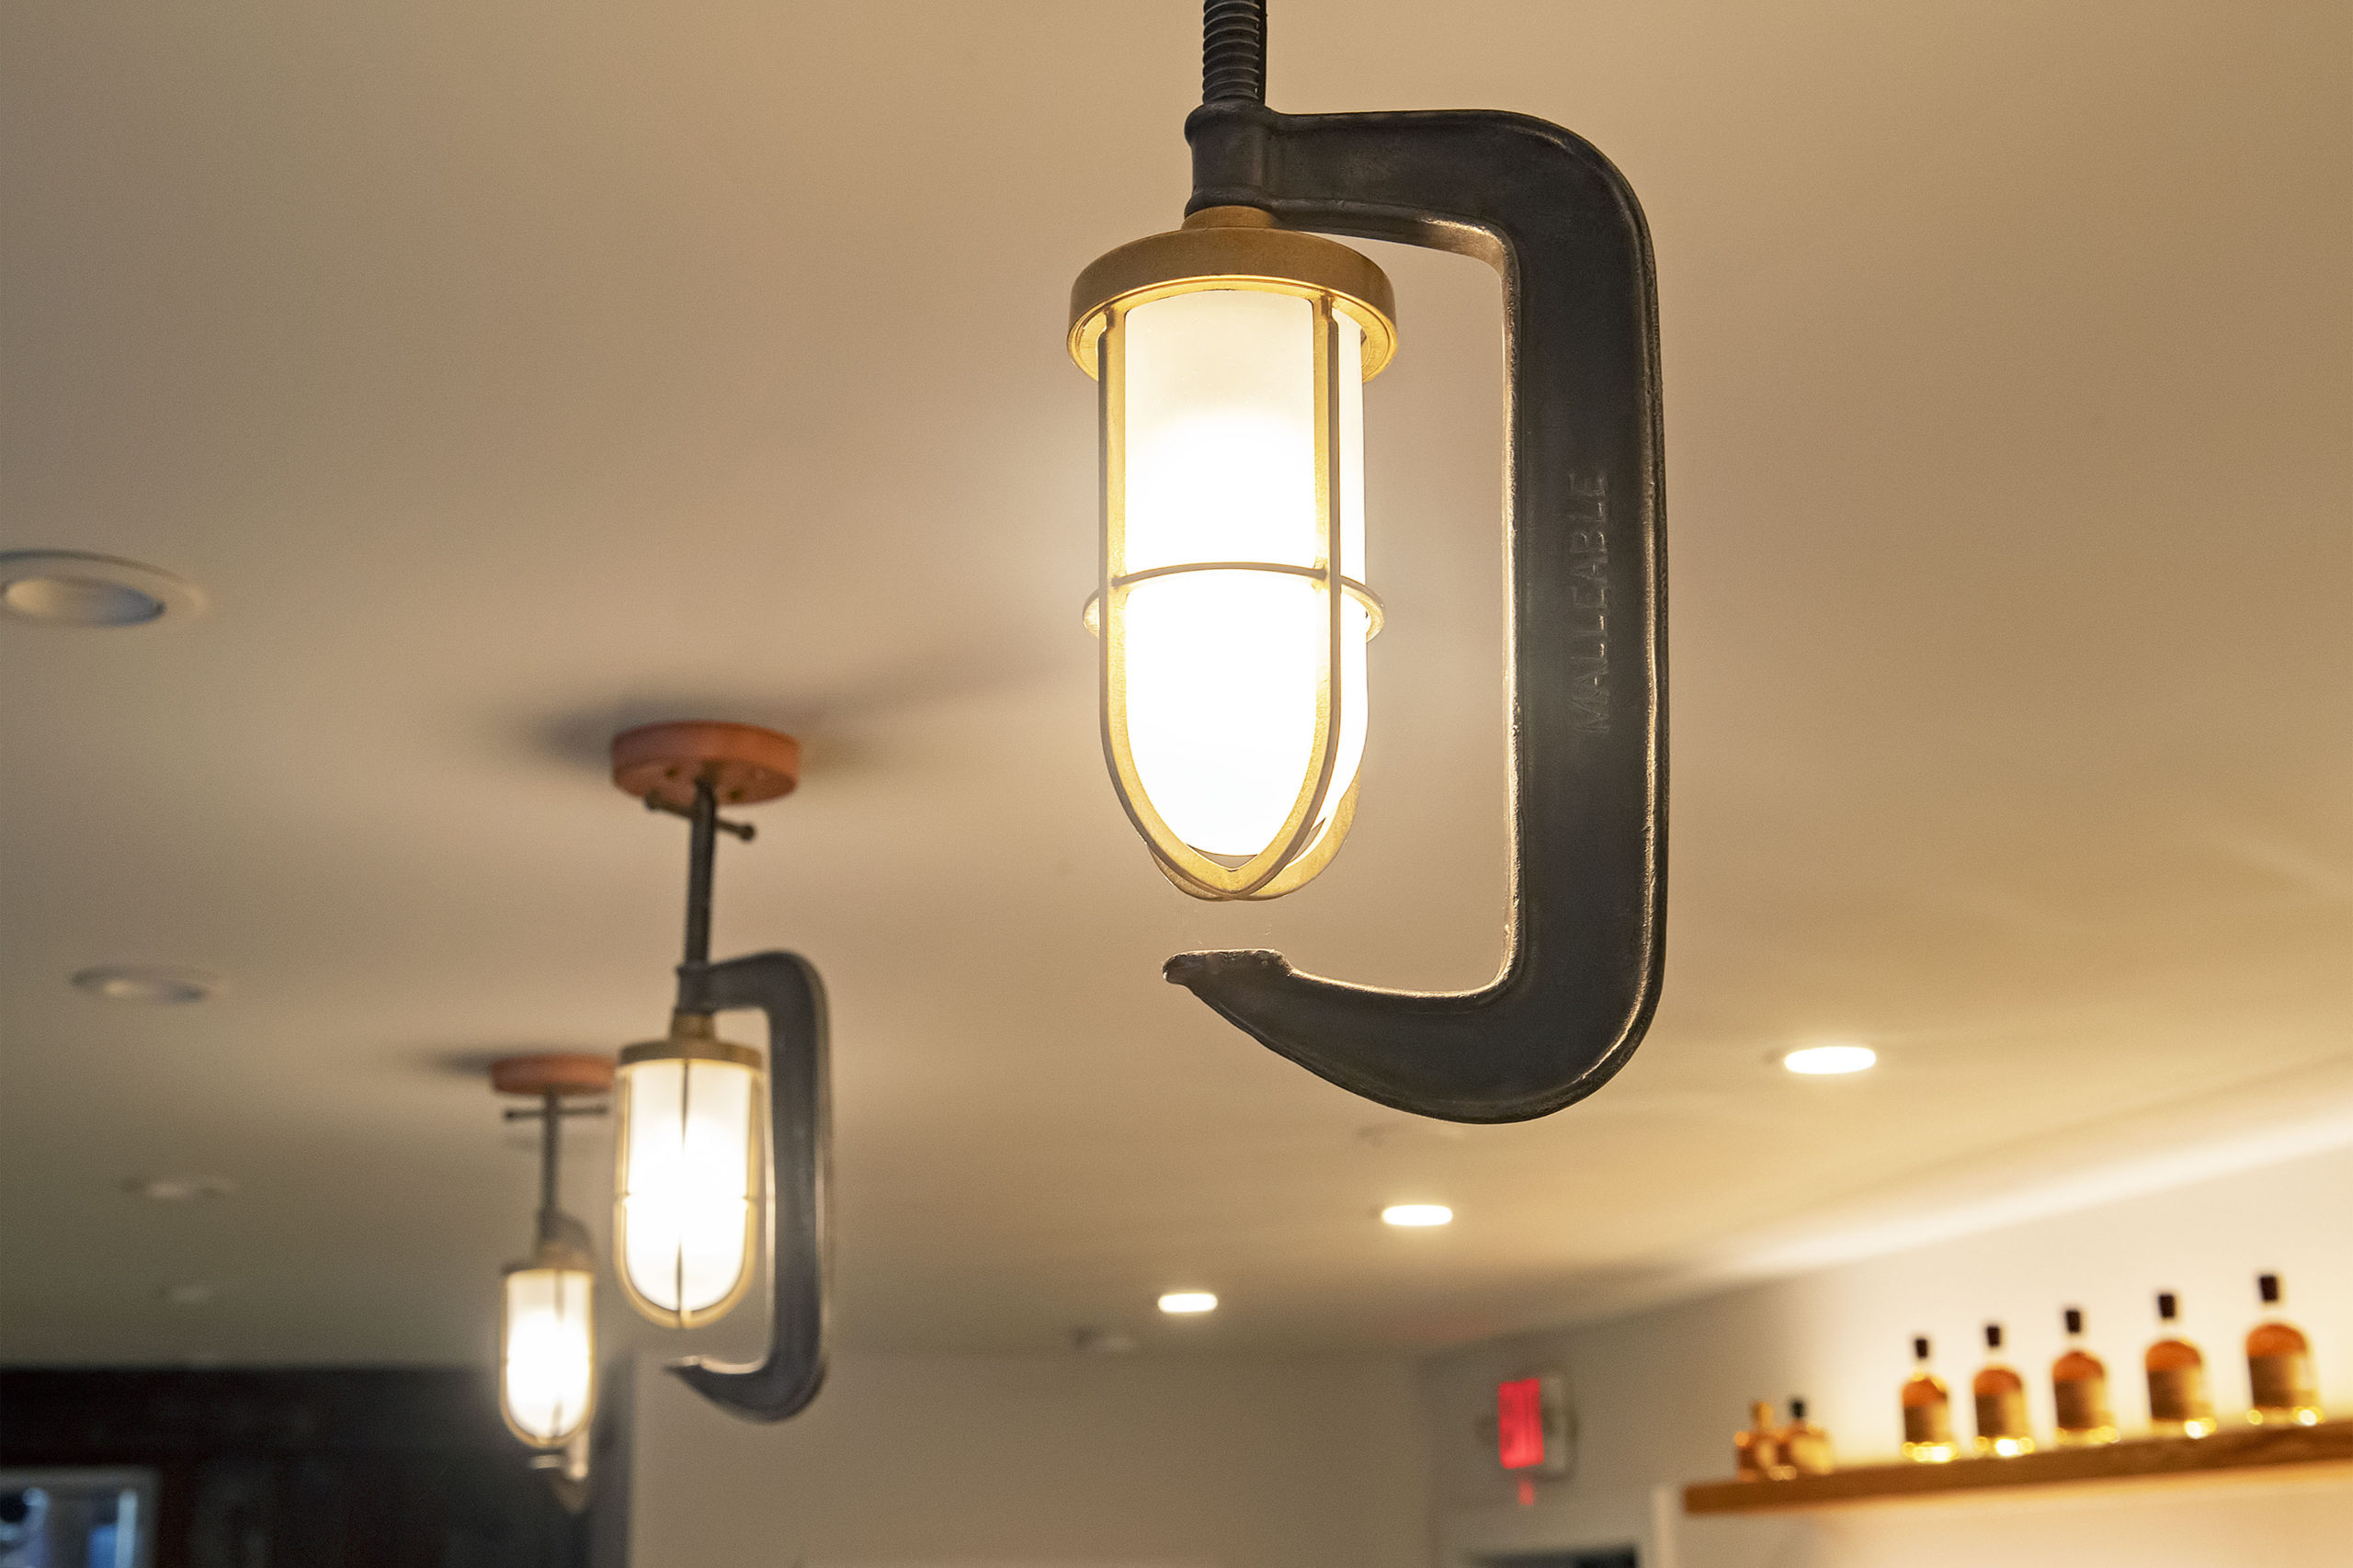 Repurposed clamps create lighting in the tasting room. MICHAEL HELLER